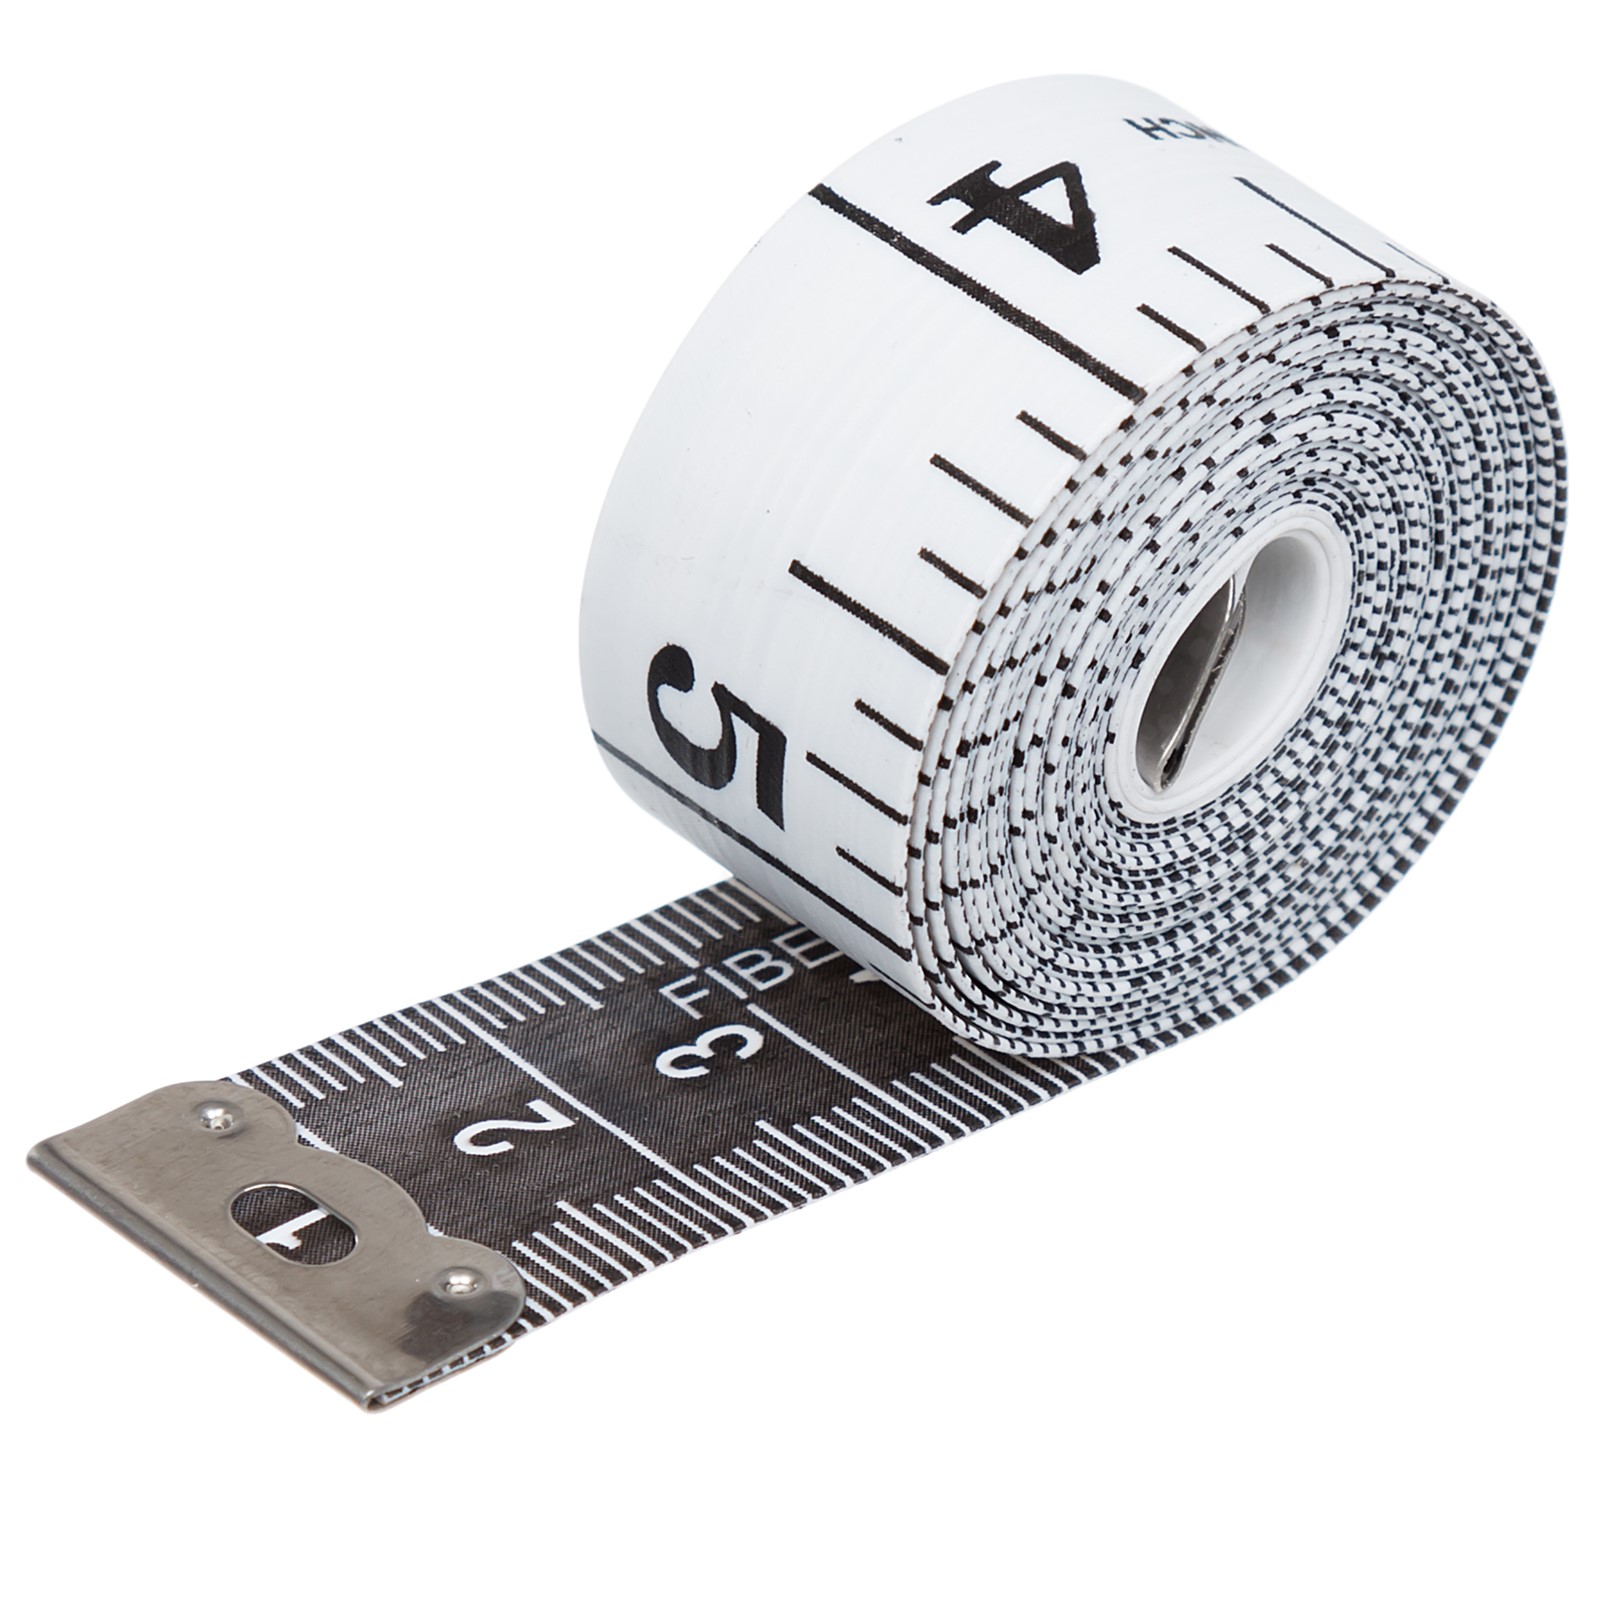 ir tape measure